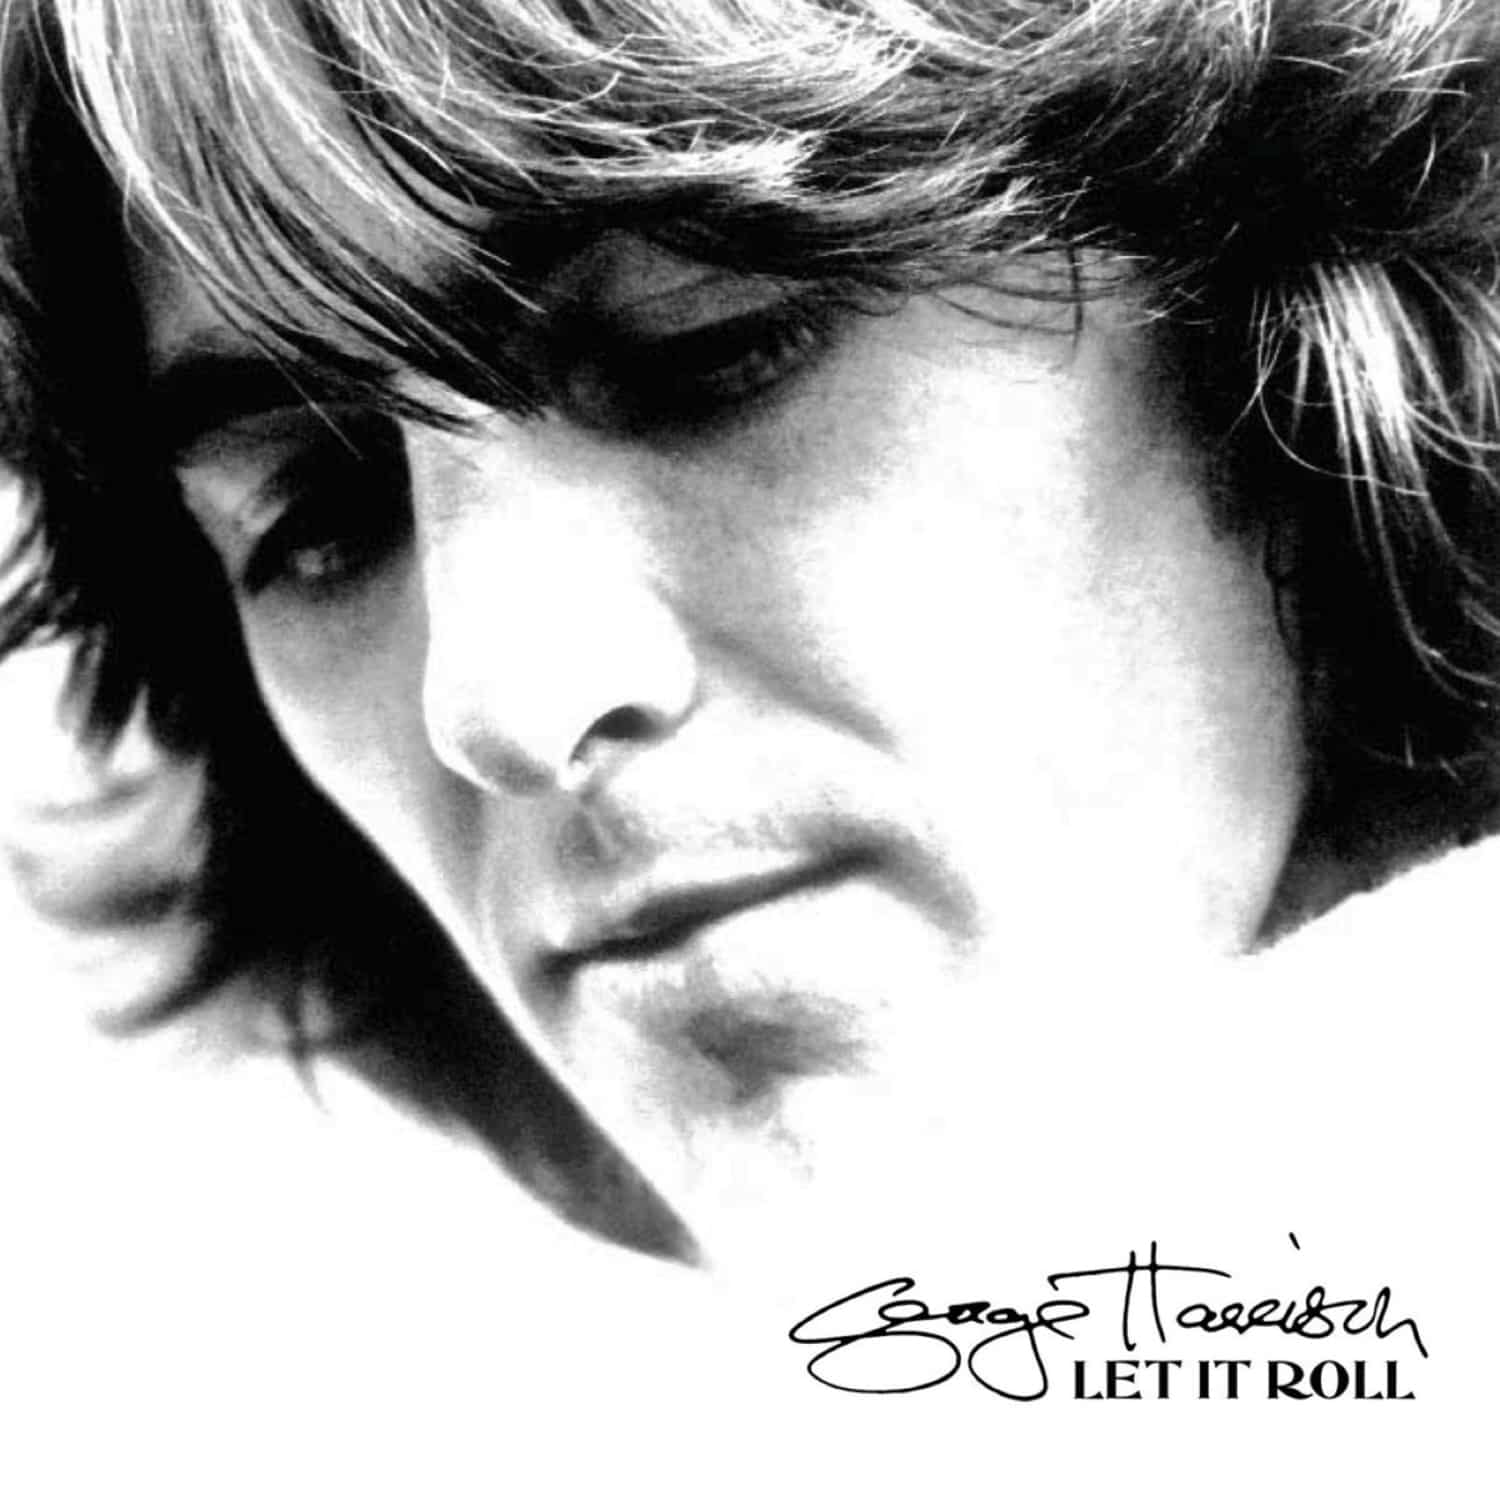 George Harrison - LET IT ROLL-SONGS BY GEORGE HARRISON